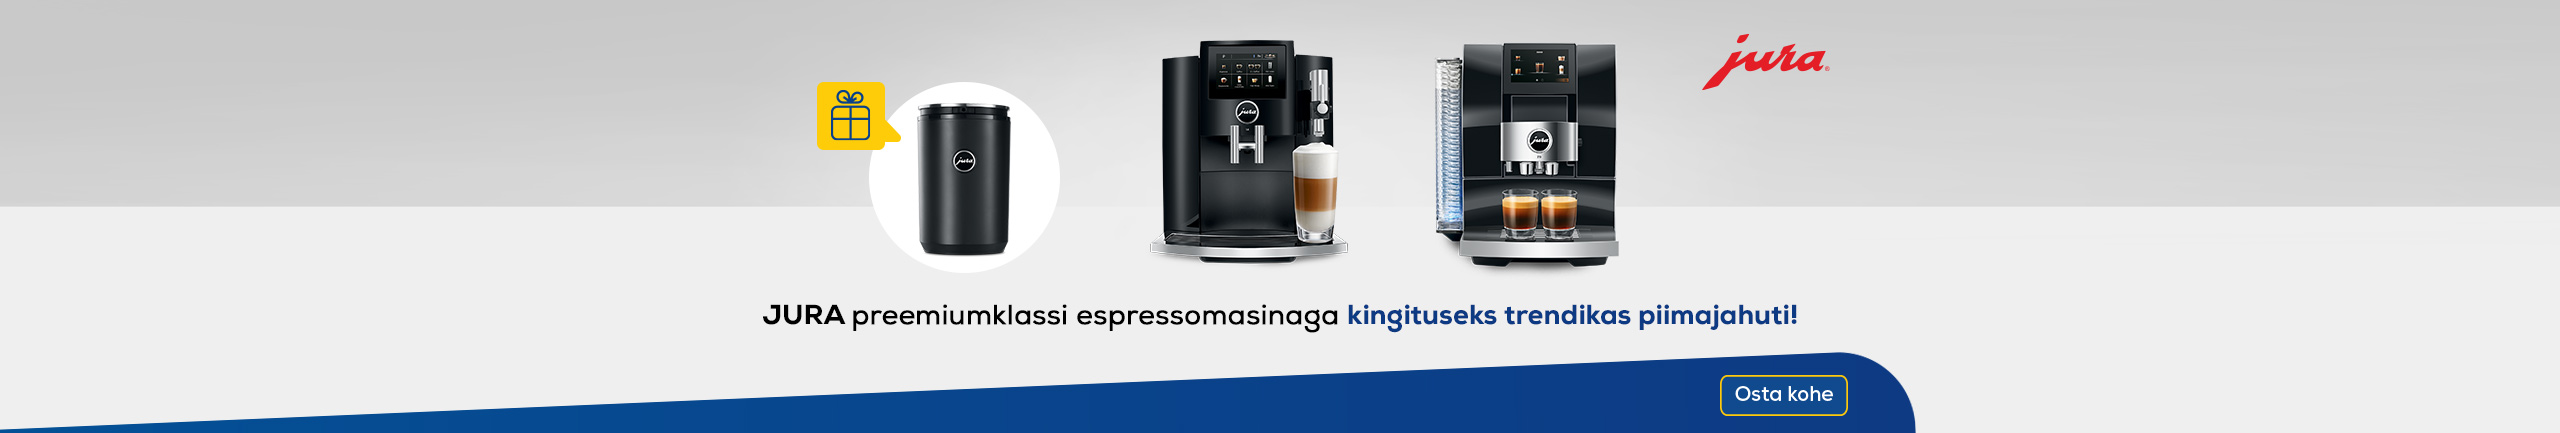 Free Jura milk cooler with premium Jura espresso machines!